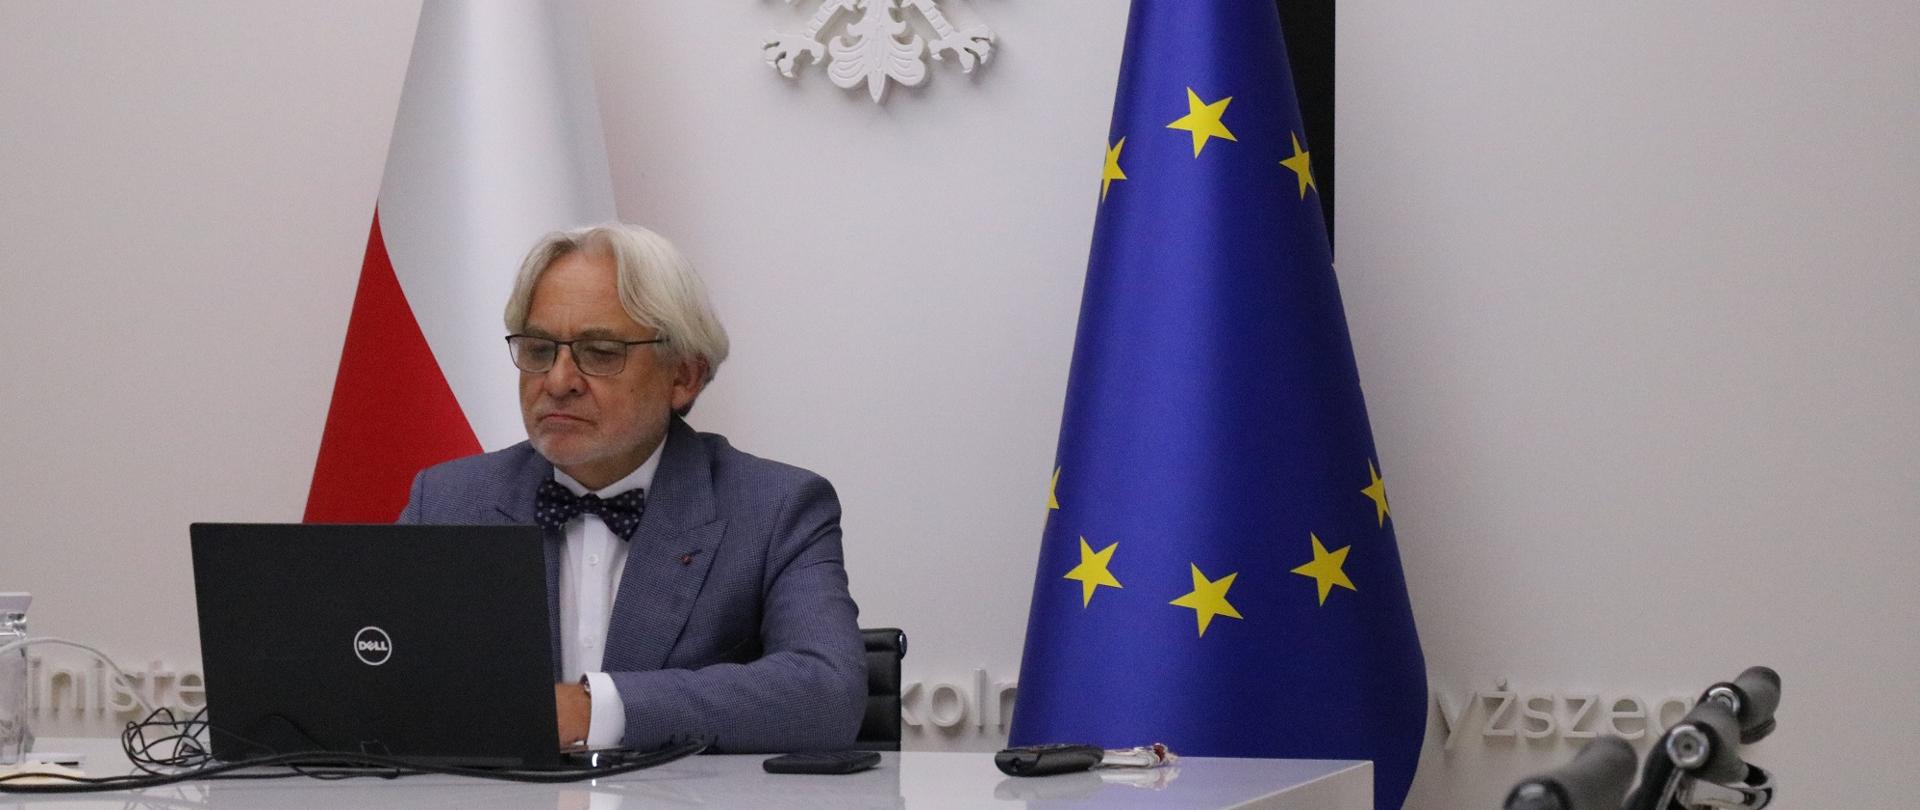 Minister W. Maksymowicz siedzi przed monitorem przy biurku, w tle flagi polska i UE.